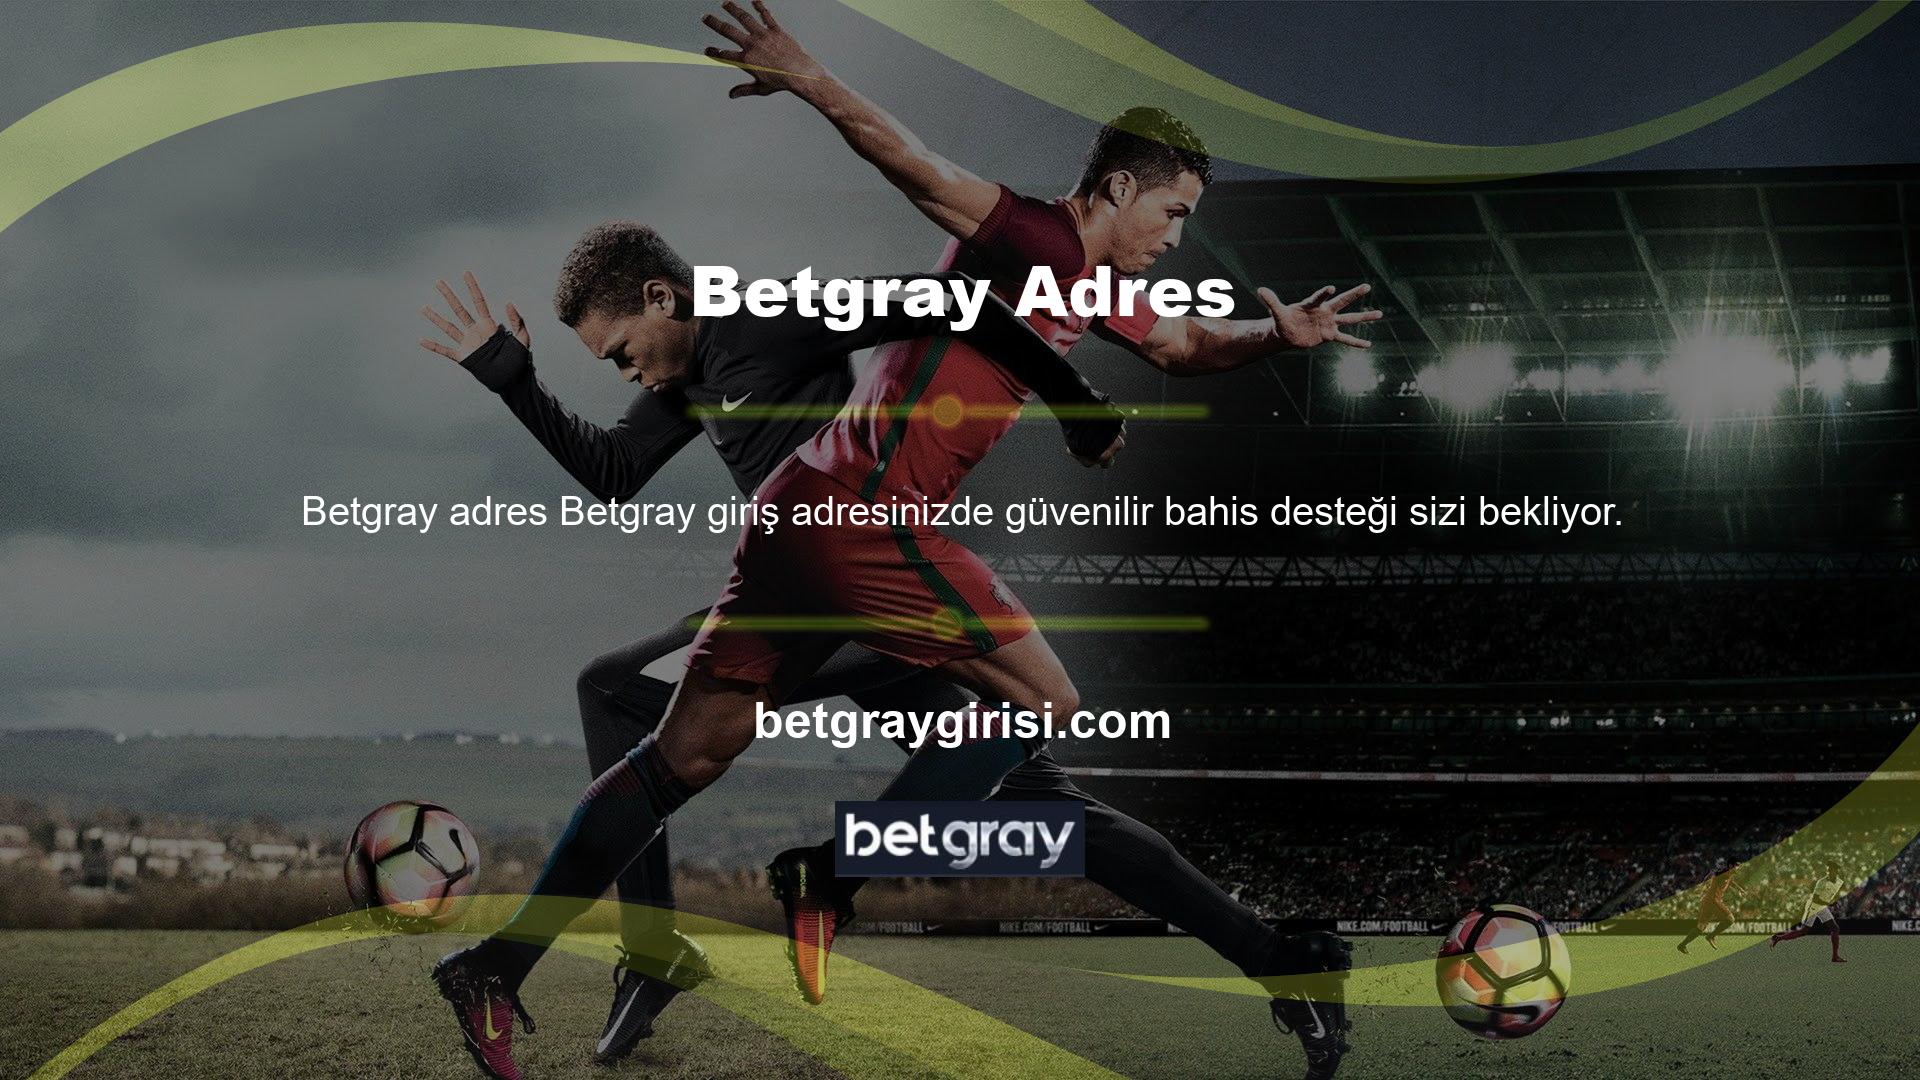 Betgray, spor bahisleri kategorisinde özel oyunlar sunmaktadır